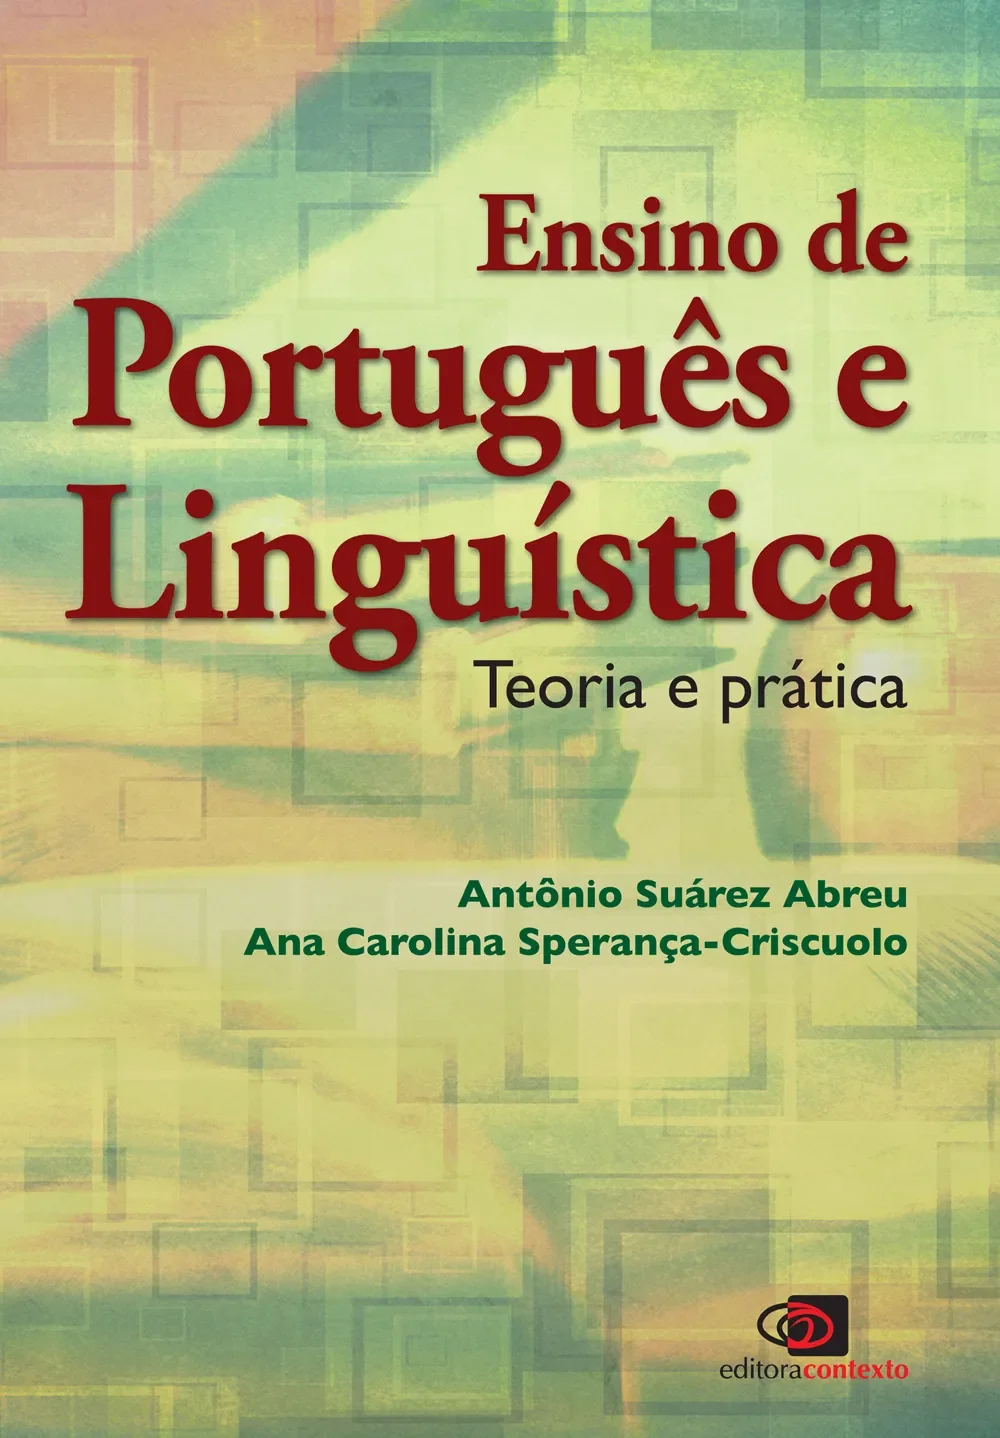 Ensino de Português e Linguística: teoria e prática